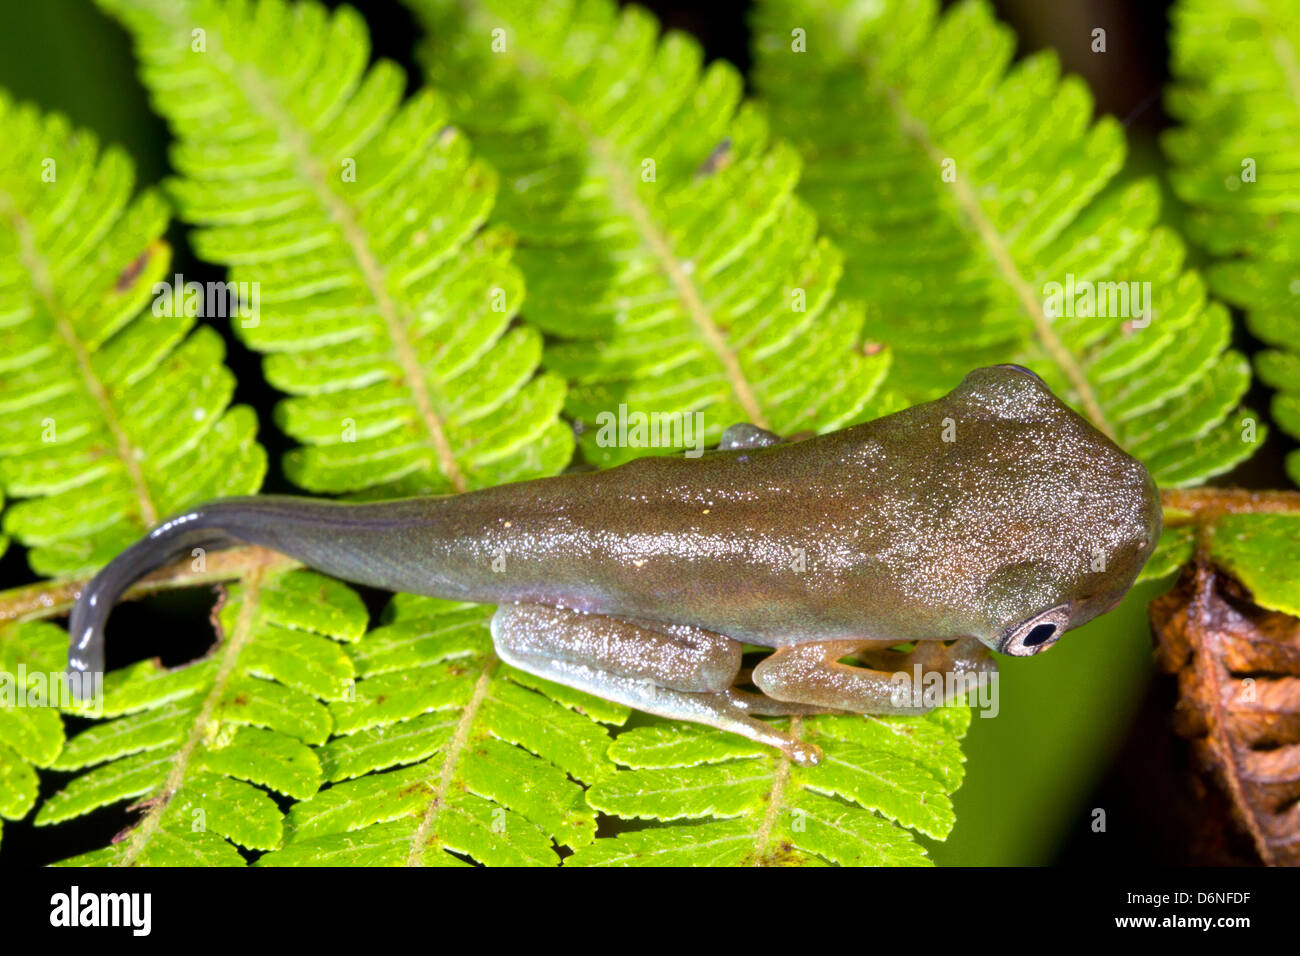 Metamorfosis de anfibios - cambio de renacuajo en rana. Una especie amazónica del Ecuador Foto de stock